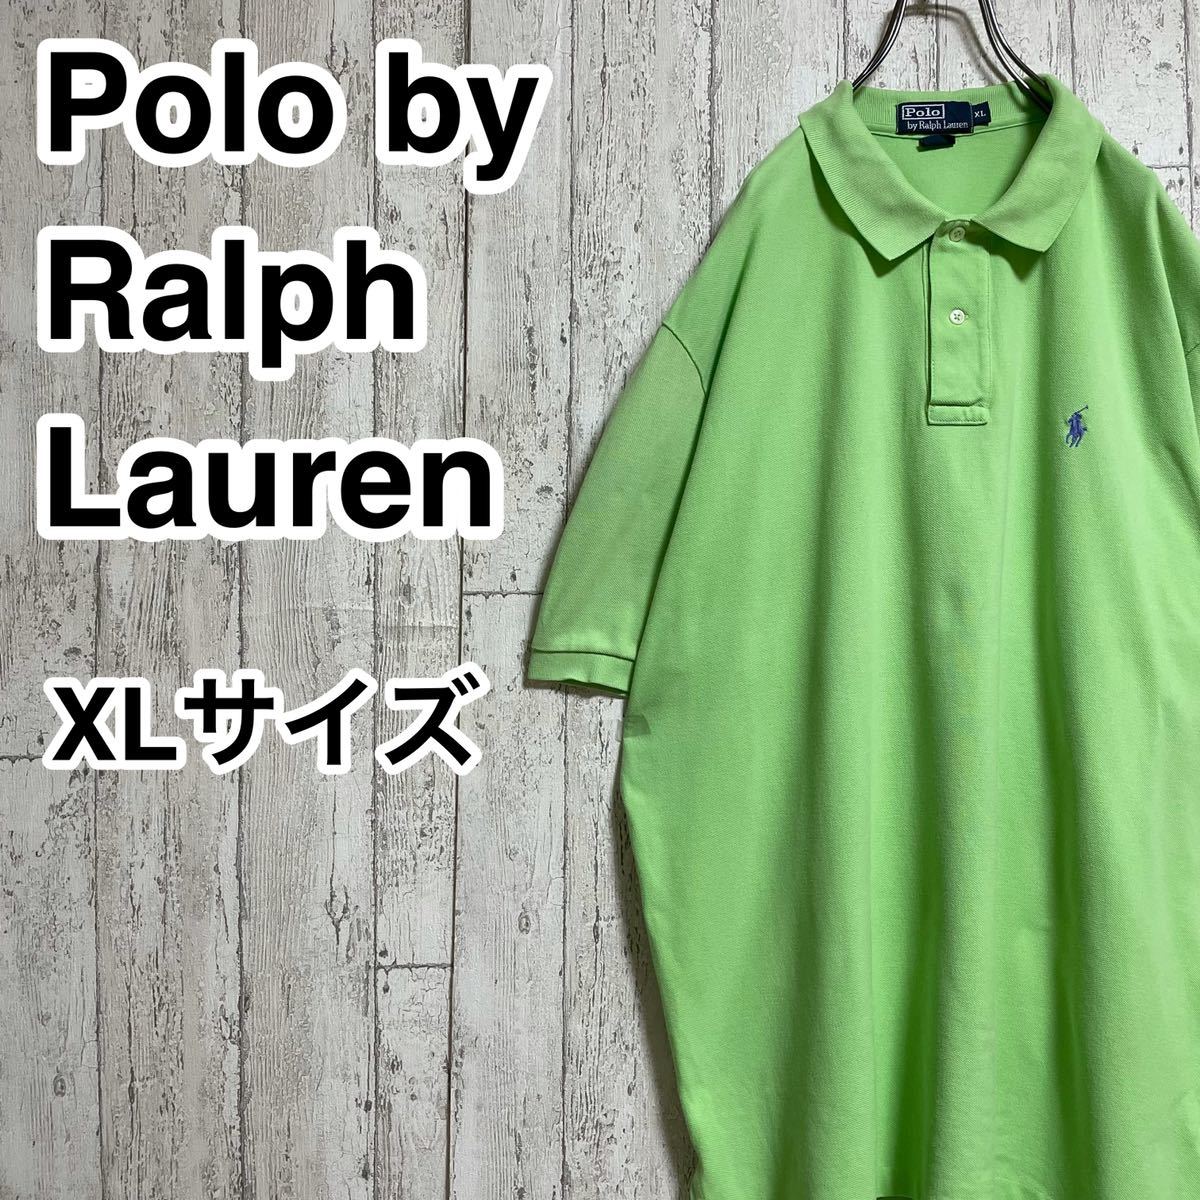 【代引き不可】 【人気アイテム】ポロバイラルフローレン Polo XLサイズ ビッグサイズ ライトグリーン ポロシャツ 半袖 Lauren Ralph by XLサイズ以上